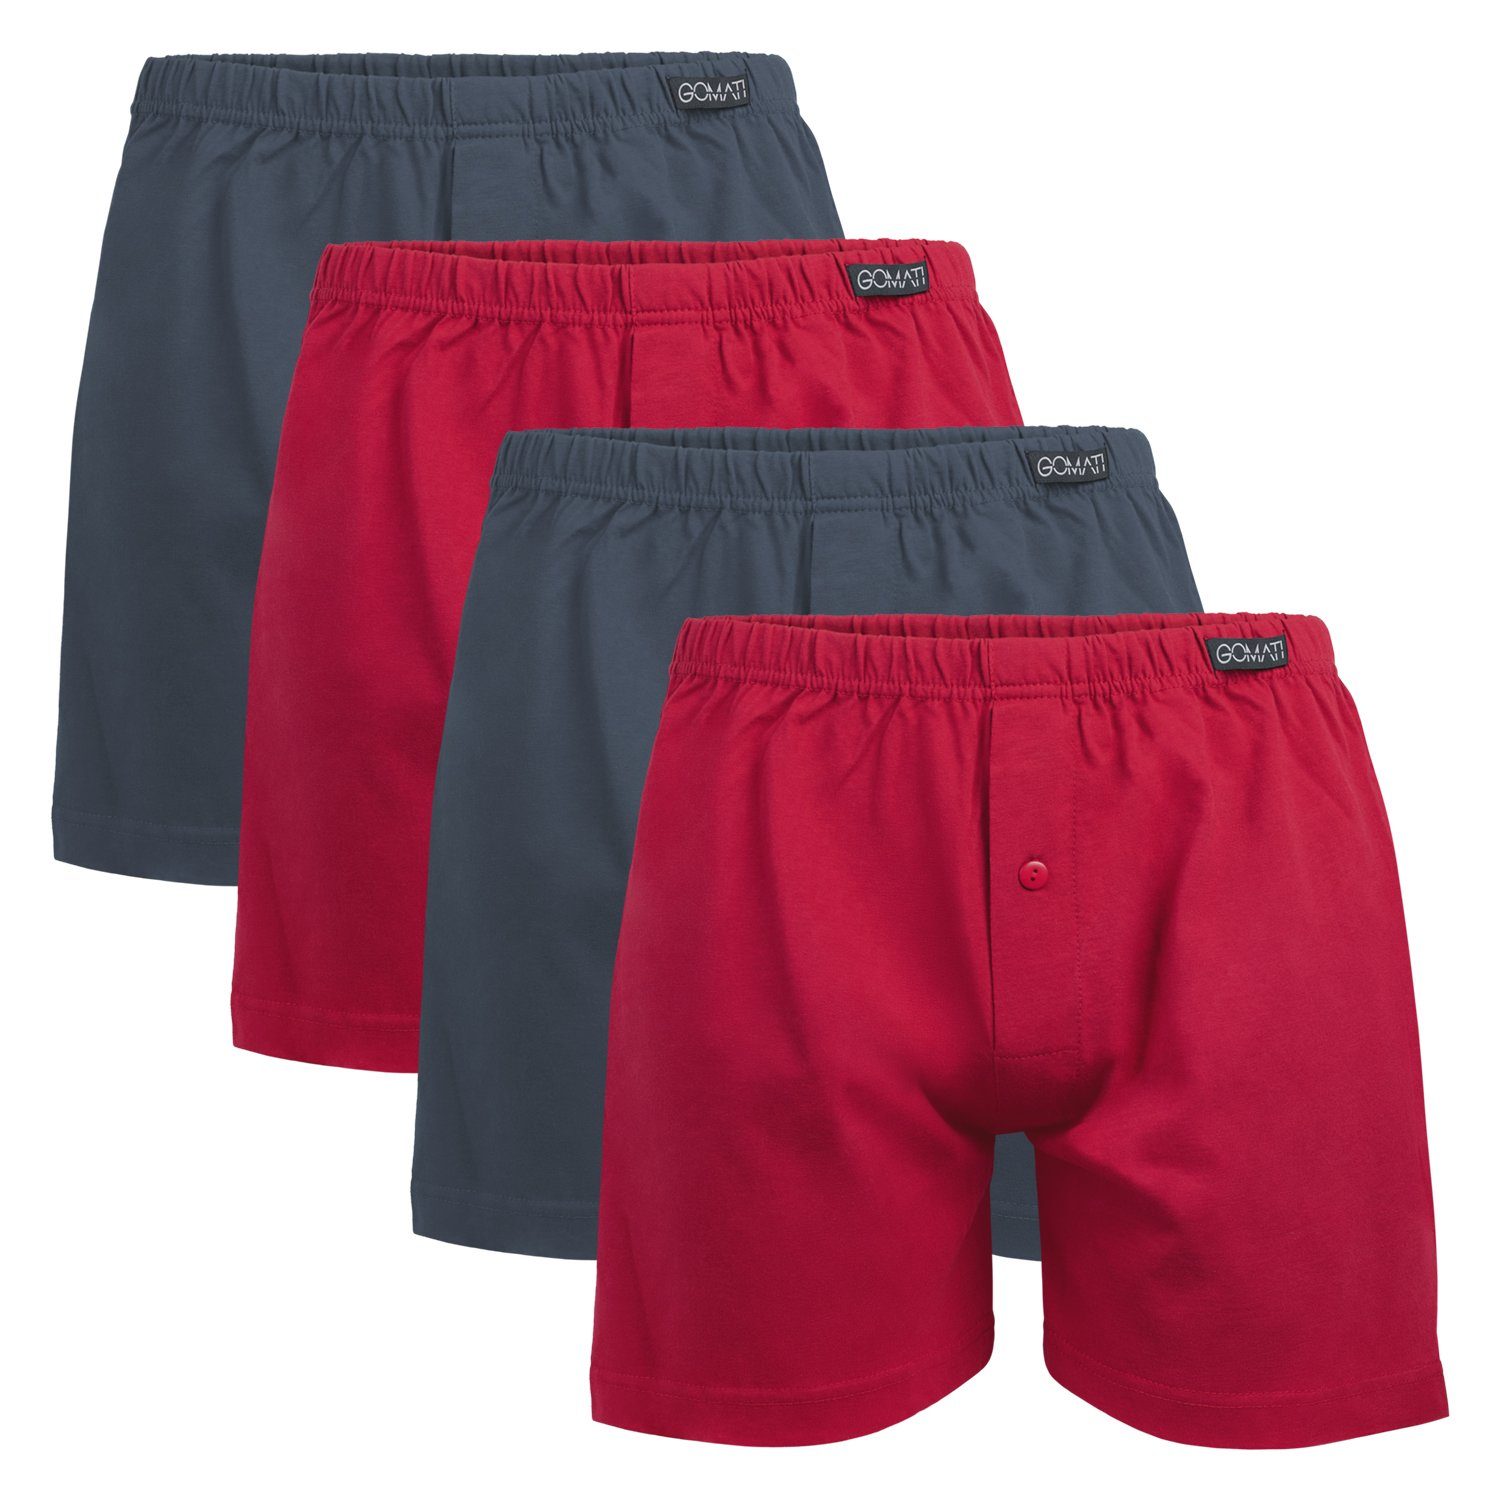 Gomati Boxershorts Herren Jersey Boxershorts Stretch Shorts aus Baumwolle (4er Pack) Mix (2x Anthrazit + 2x Deep Red)